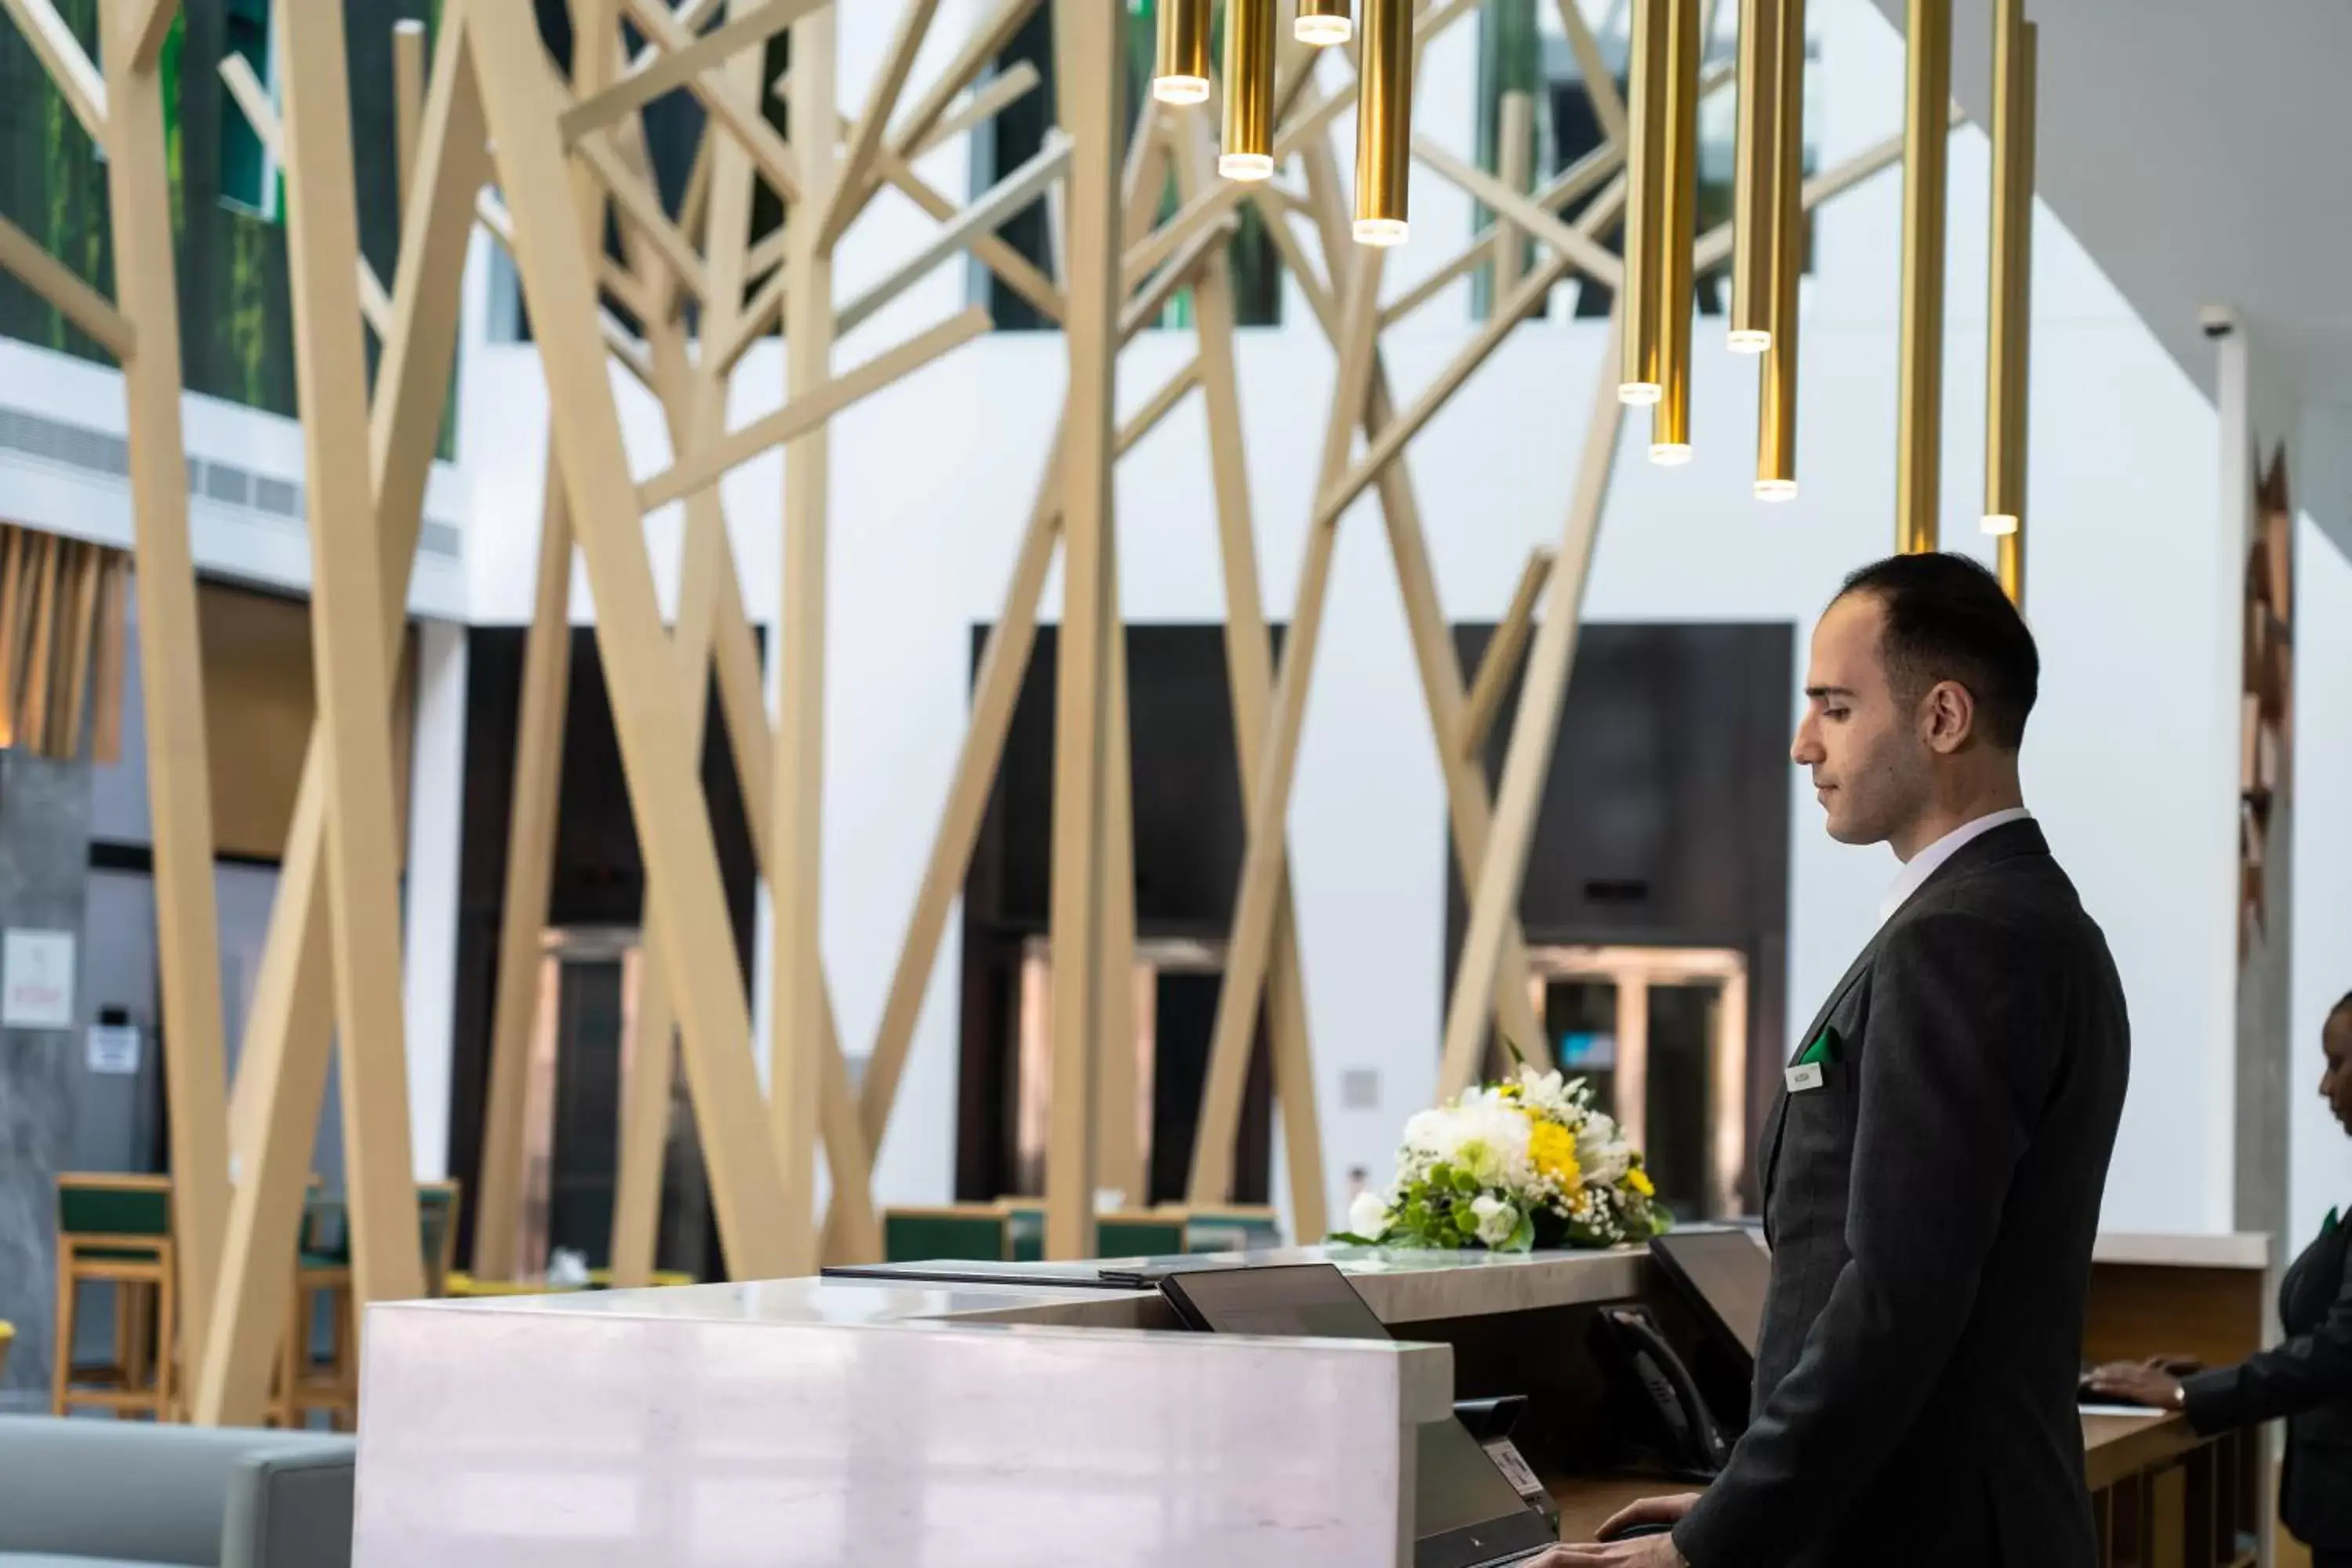 Lobby or reception, Staff in Al Khoory Courtyard Hotel